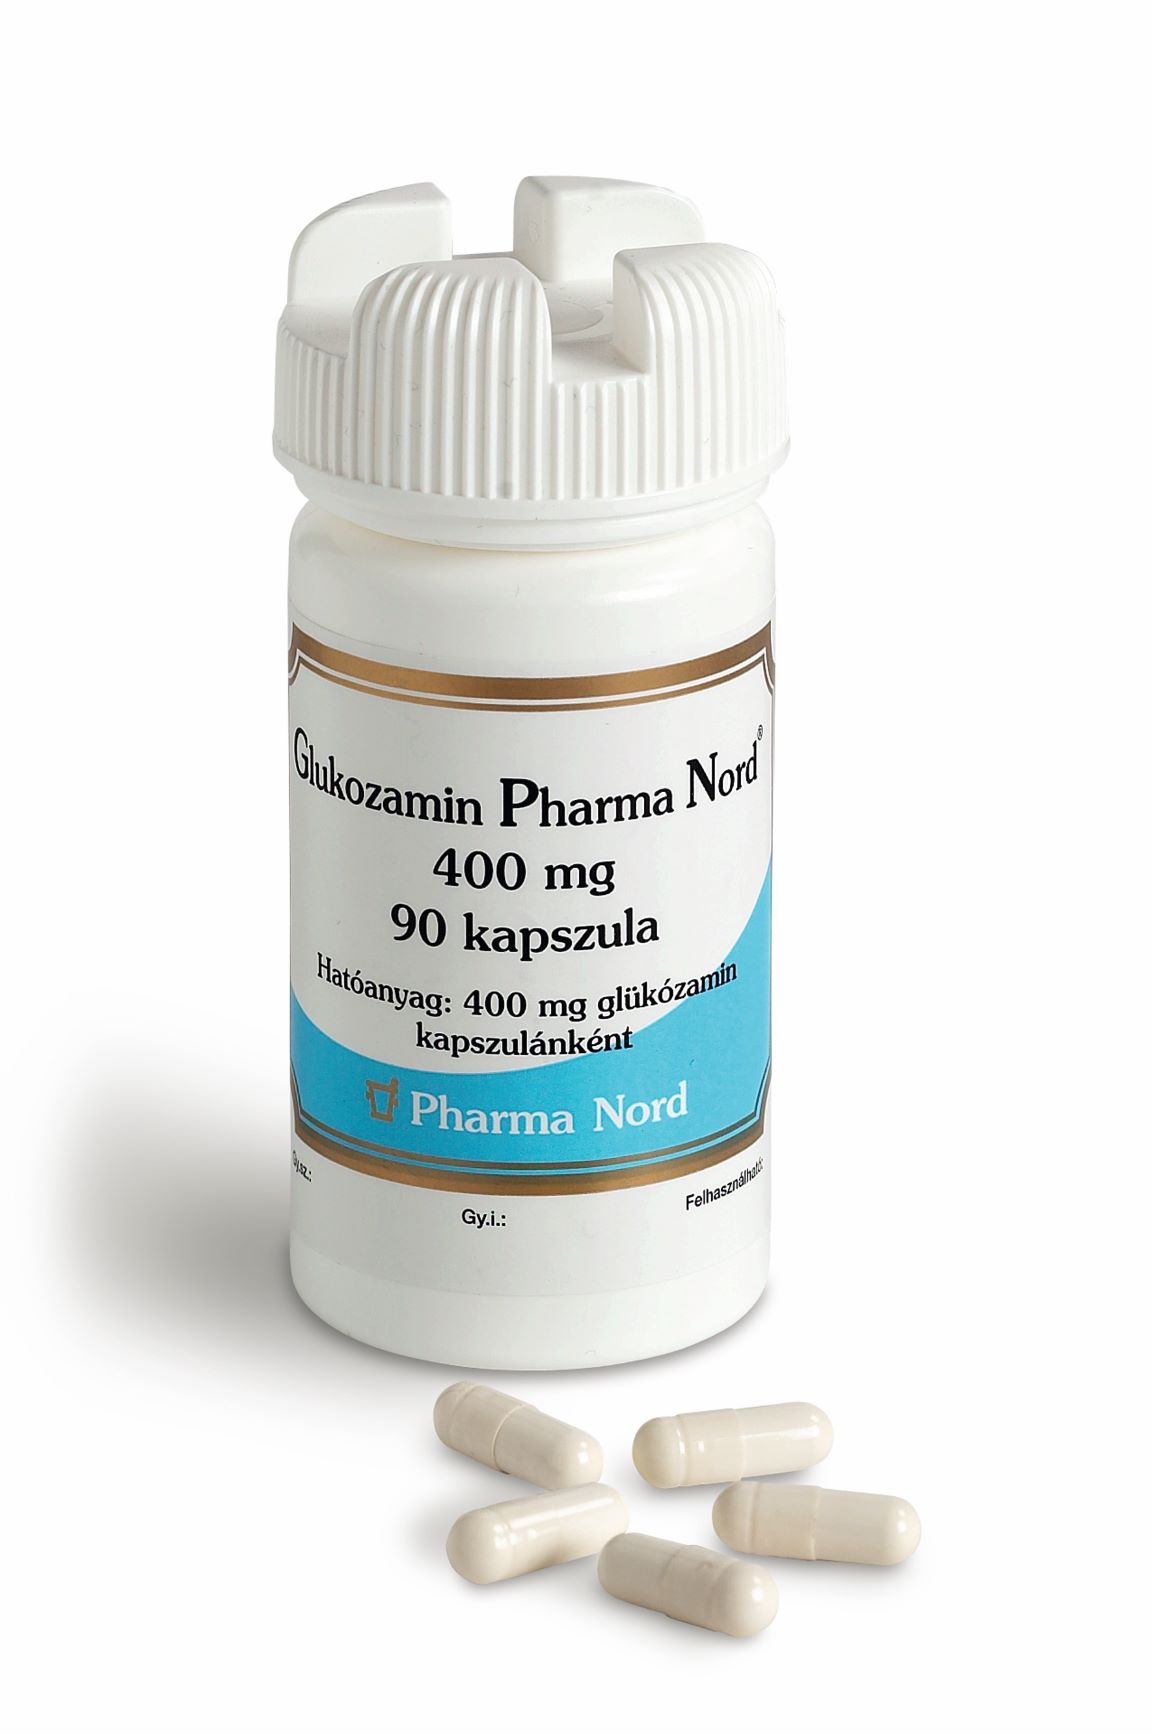 Glukozamin Pharma Nord 400 mg kemény kapszula